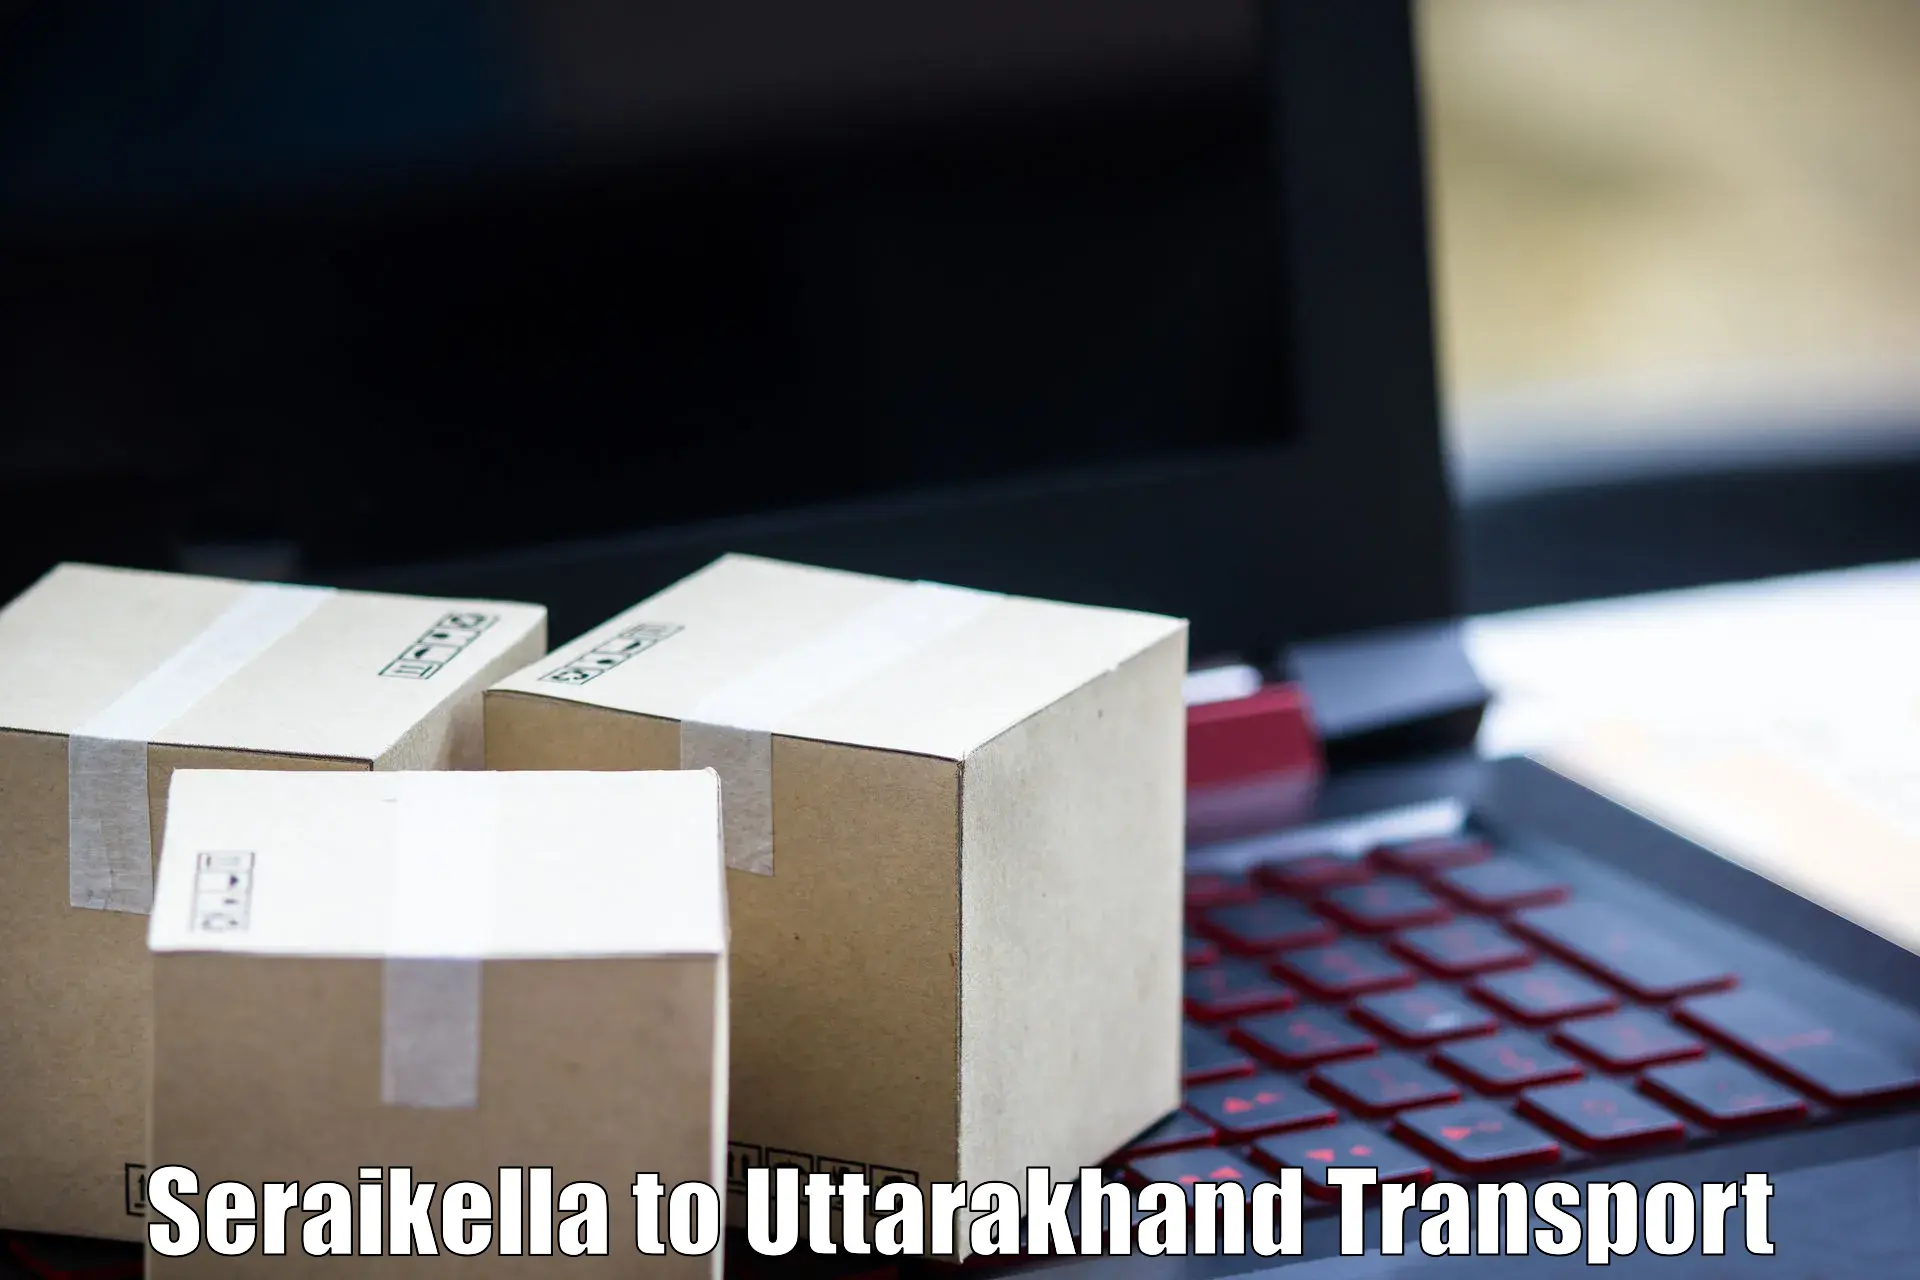 Nearest transport service Seraikella to Uttarakhand